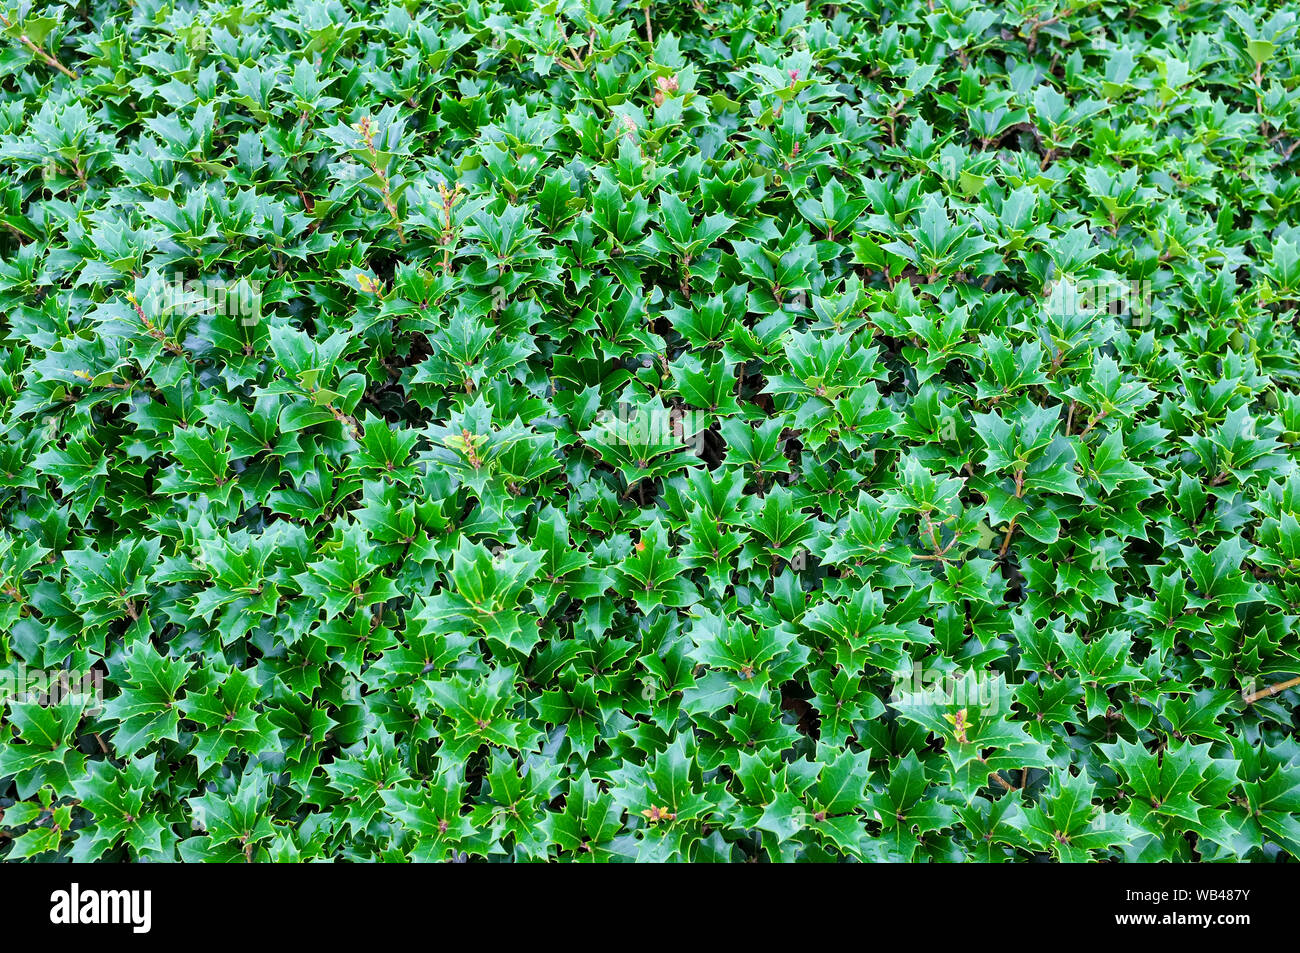 Holly bush. Stock Photo